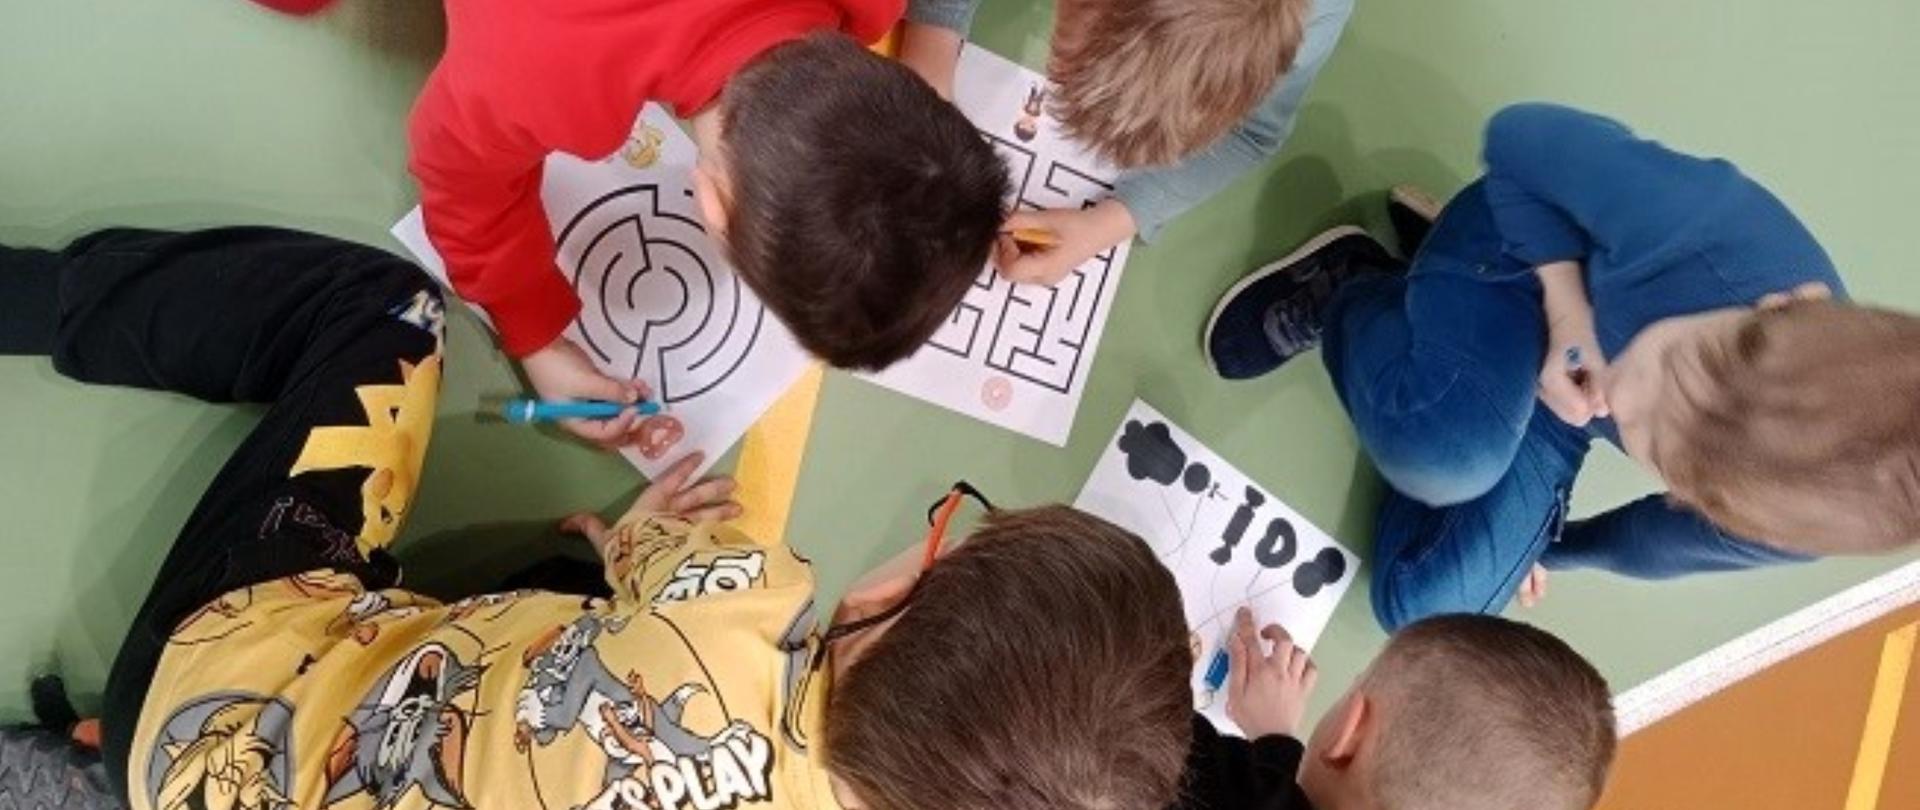 Dzieci szukają drogi w labiryncie na kartce, 4 chłopców siedzi na podłodze